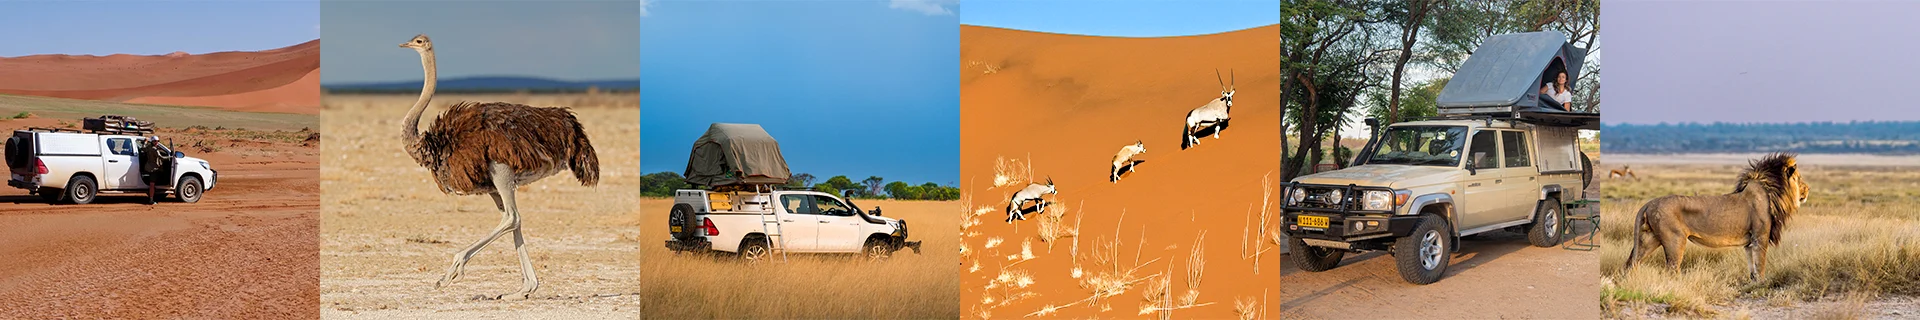 Namibia-Self-Drive-Safari-Tours-Route-Storm-Visit